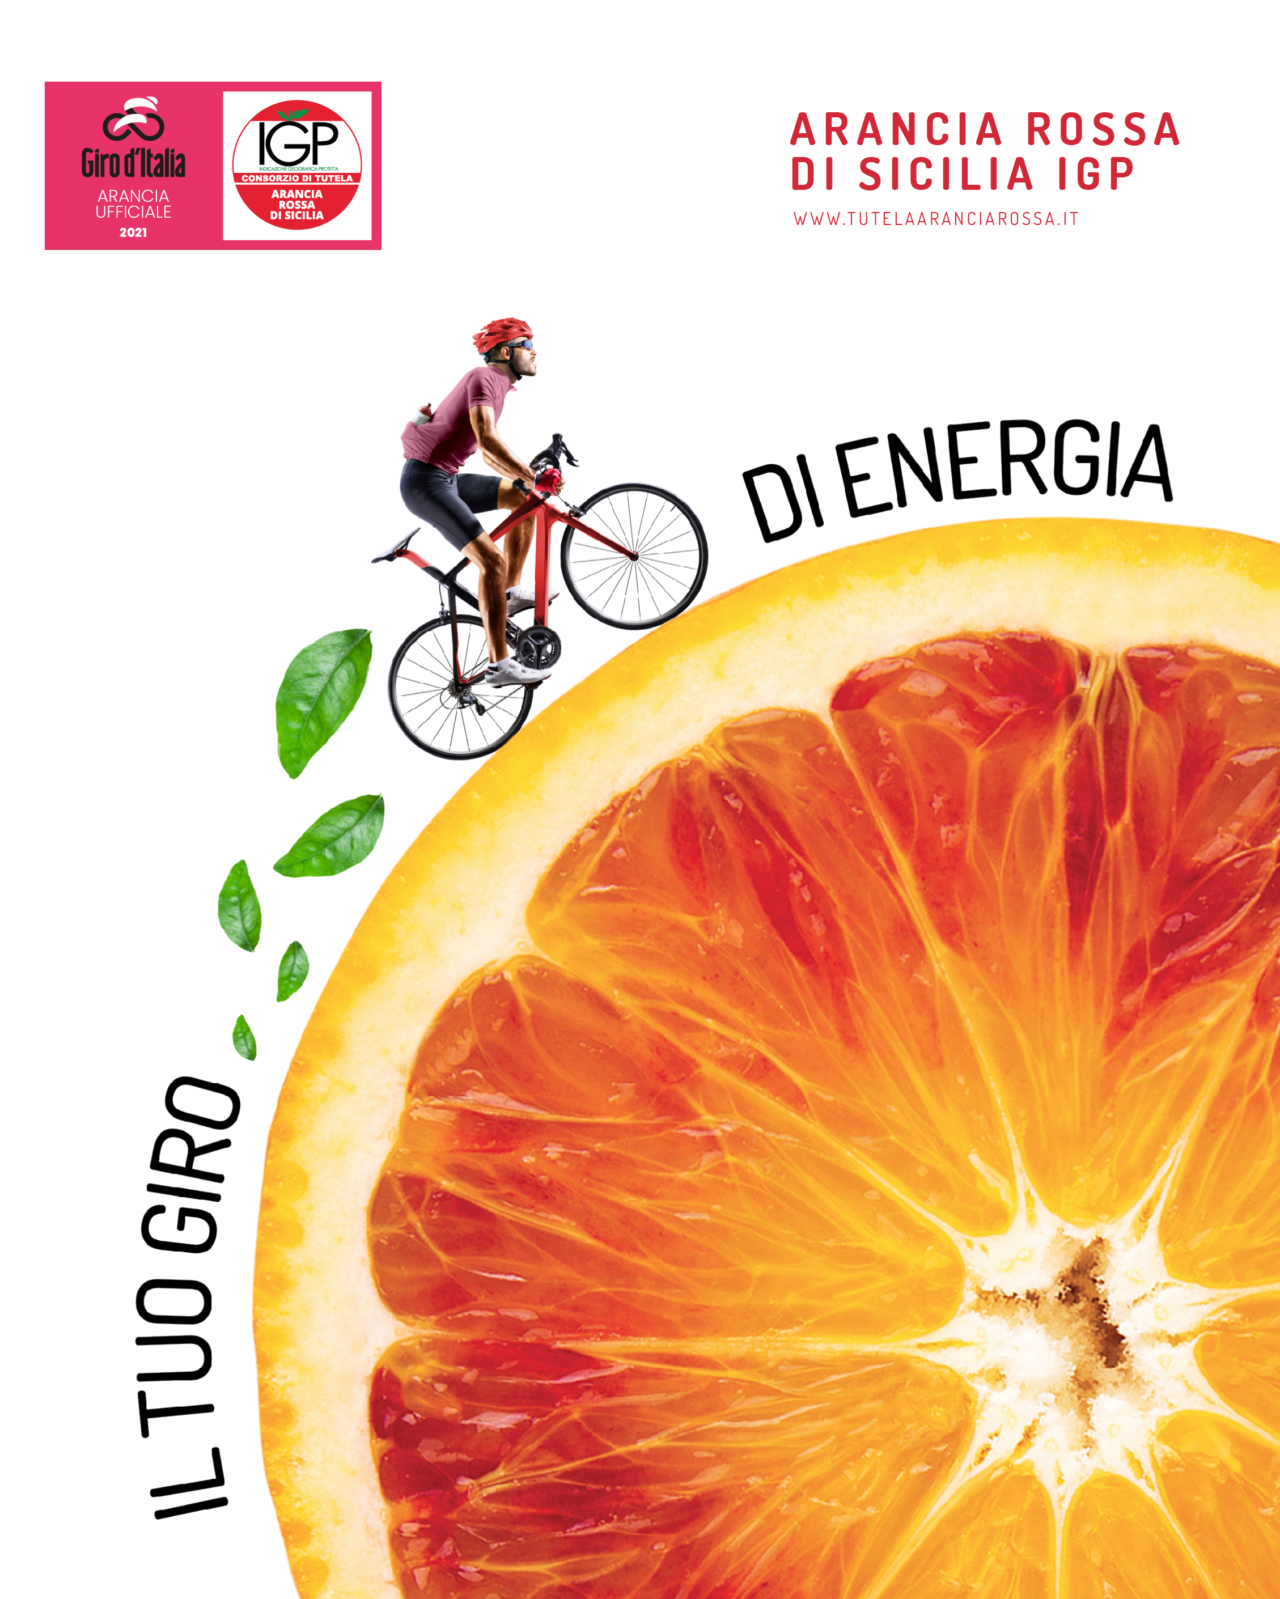 L’Arancia Rossa di Sicilia Igp tra gli sponsor del Giro d’Italia 2021